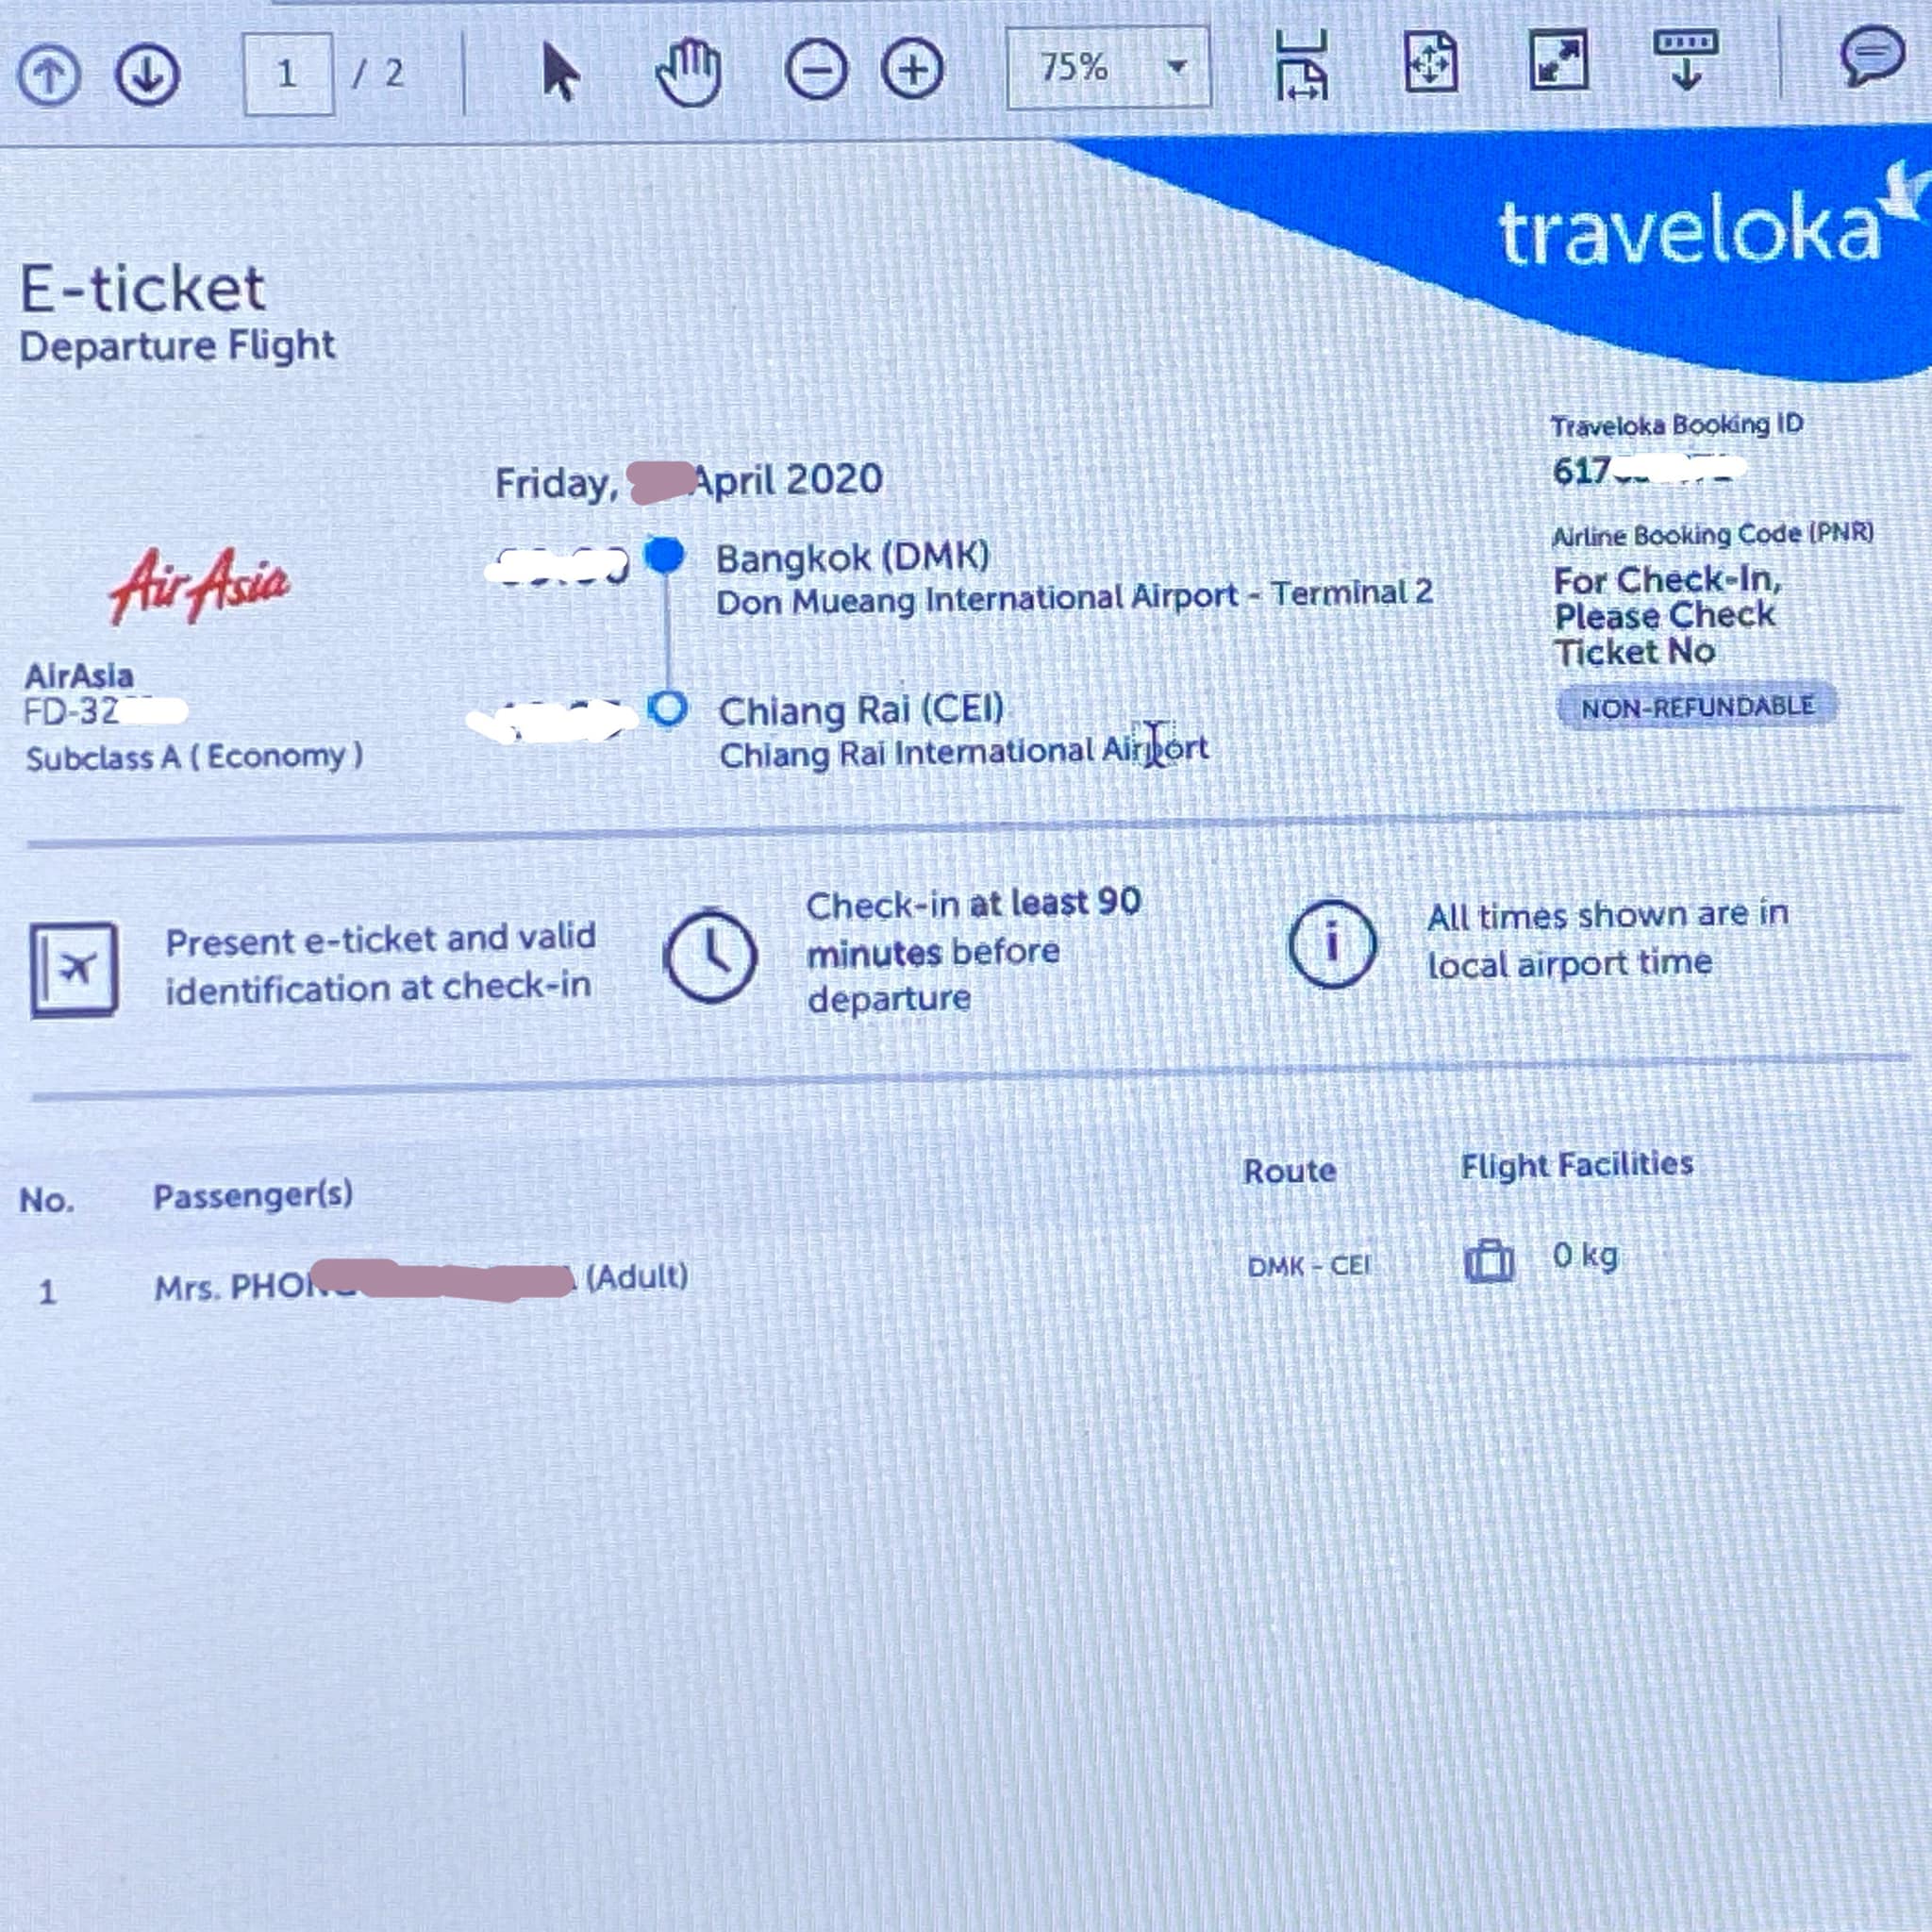 ซื้อตั๋วเครื่องบิน Airasia จาก Traveloka แต่ไม่มี Booking Number มา  เช็คอินได้ไหมคะ (มีรูป) - Pantip